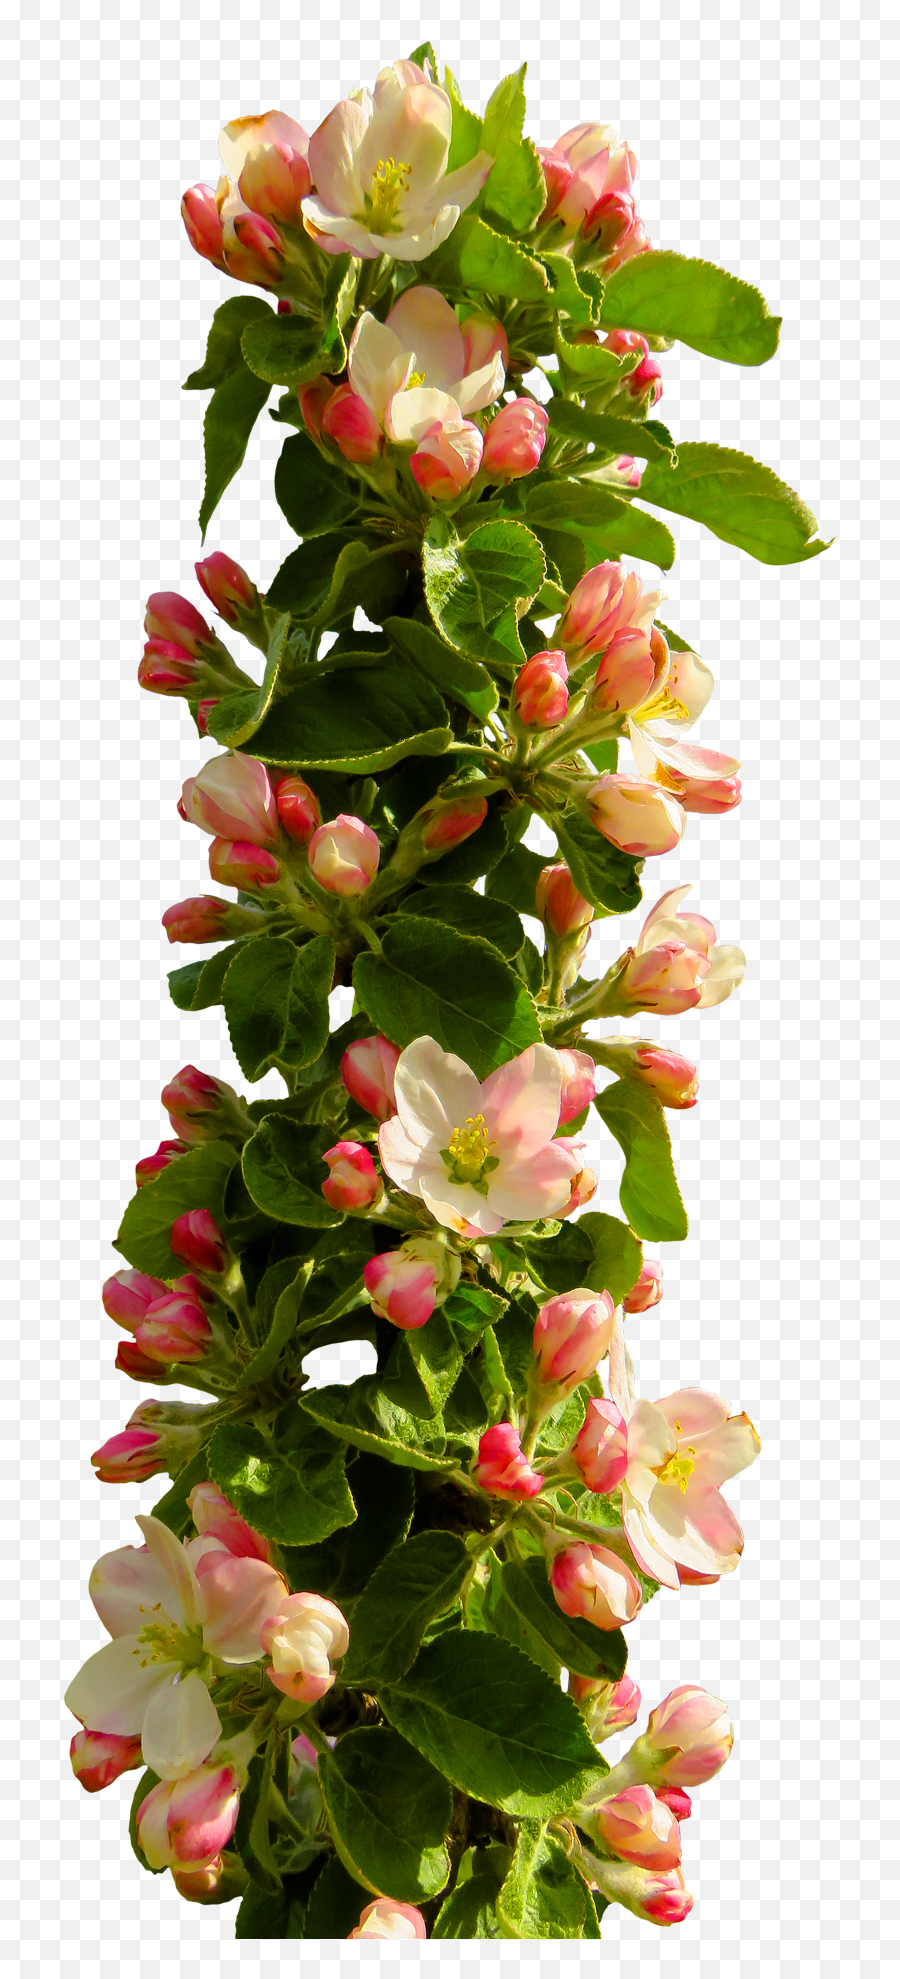 Rose Flower Png Transparent Image - Pngpix Png Format Flowers Png Hd,Rose Flower Png